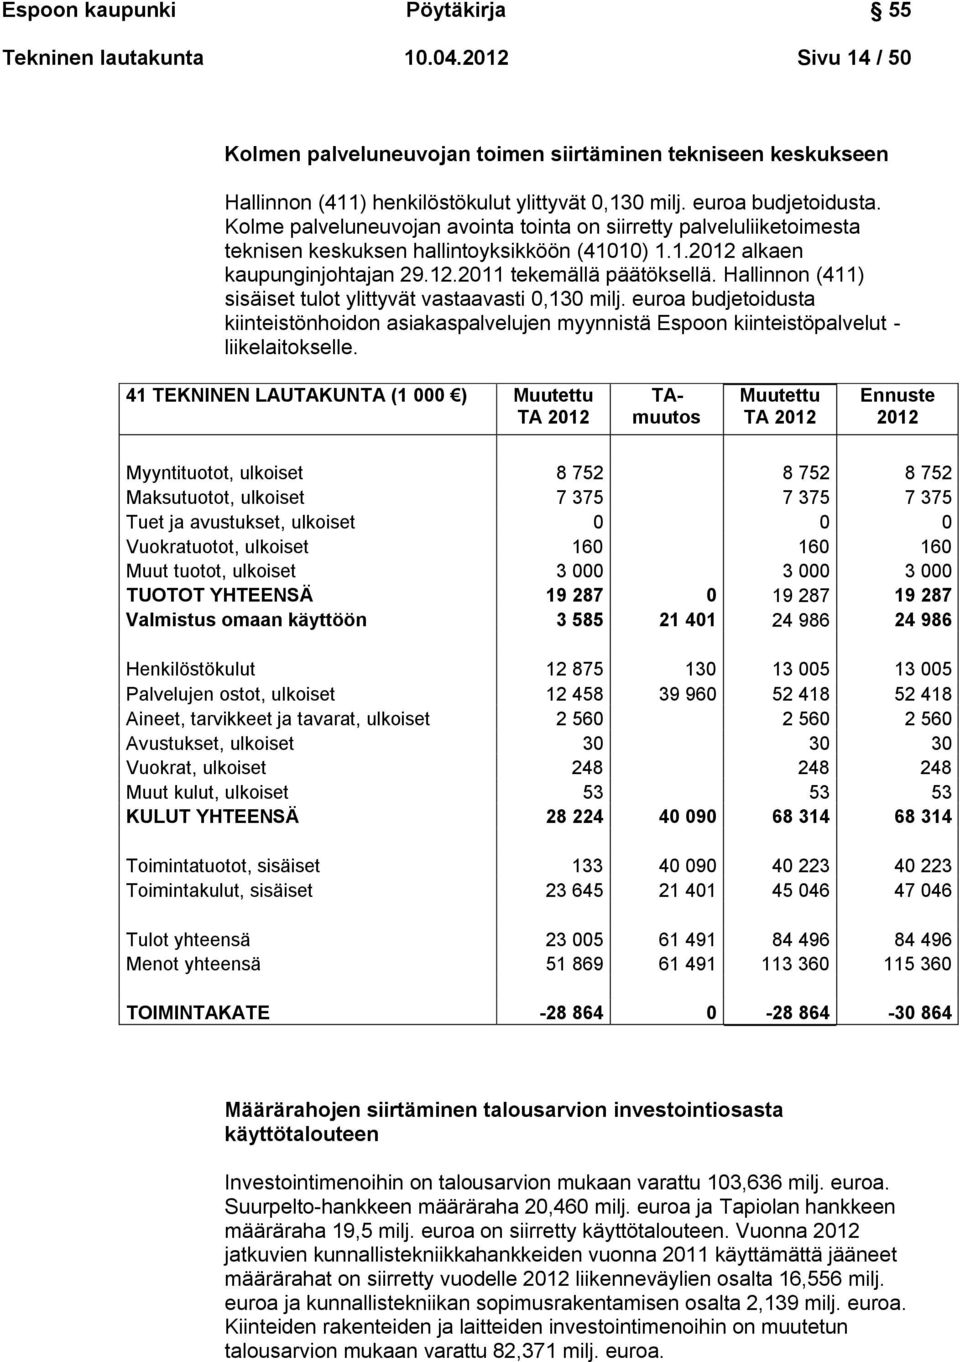 Hallinnon (411) sisäiset tulot ylittyvät vastaavasti 0,130 milj. euroa budjetoidusta kiinteistönhoidon asiakaspalvelujen myynnistä Espoon kiinteistöpalvelut - liikelaitokselle.